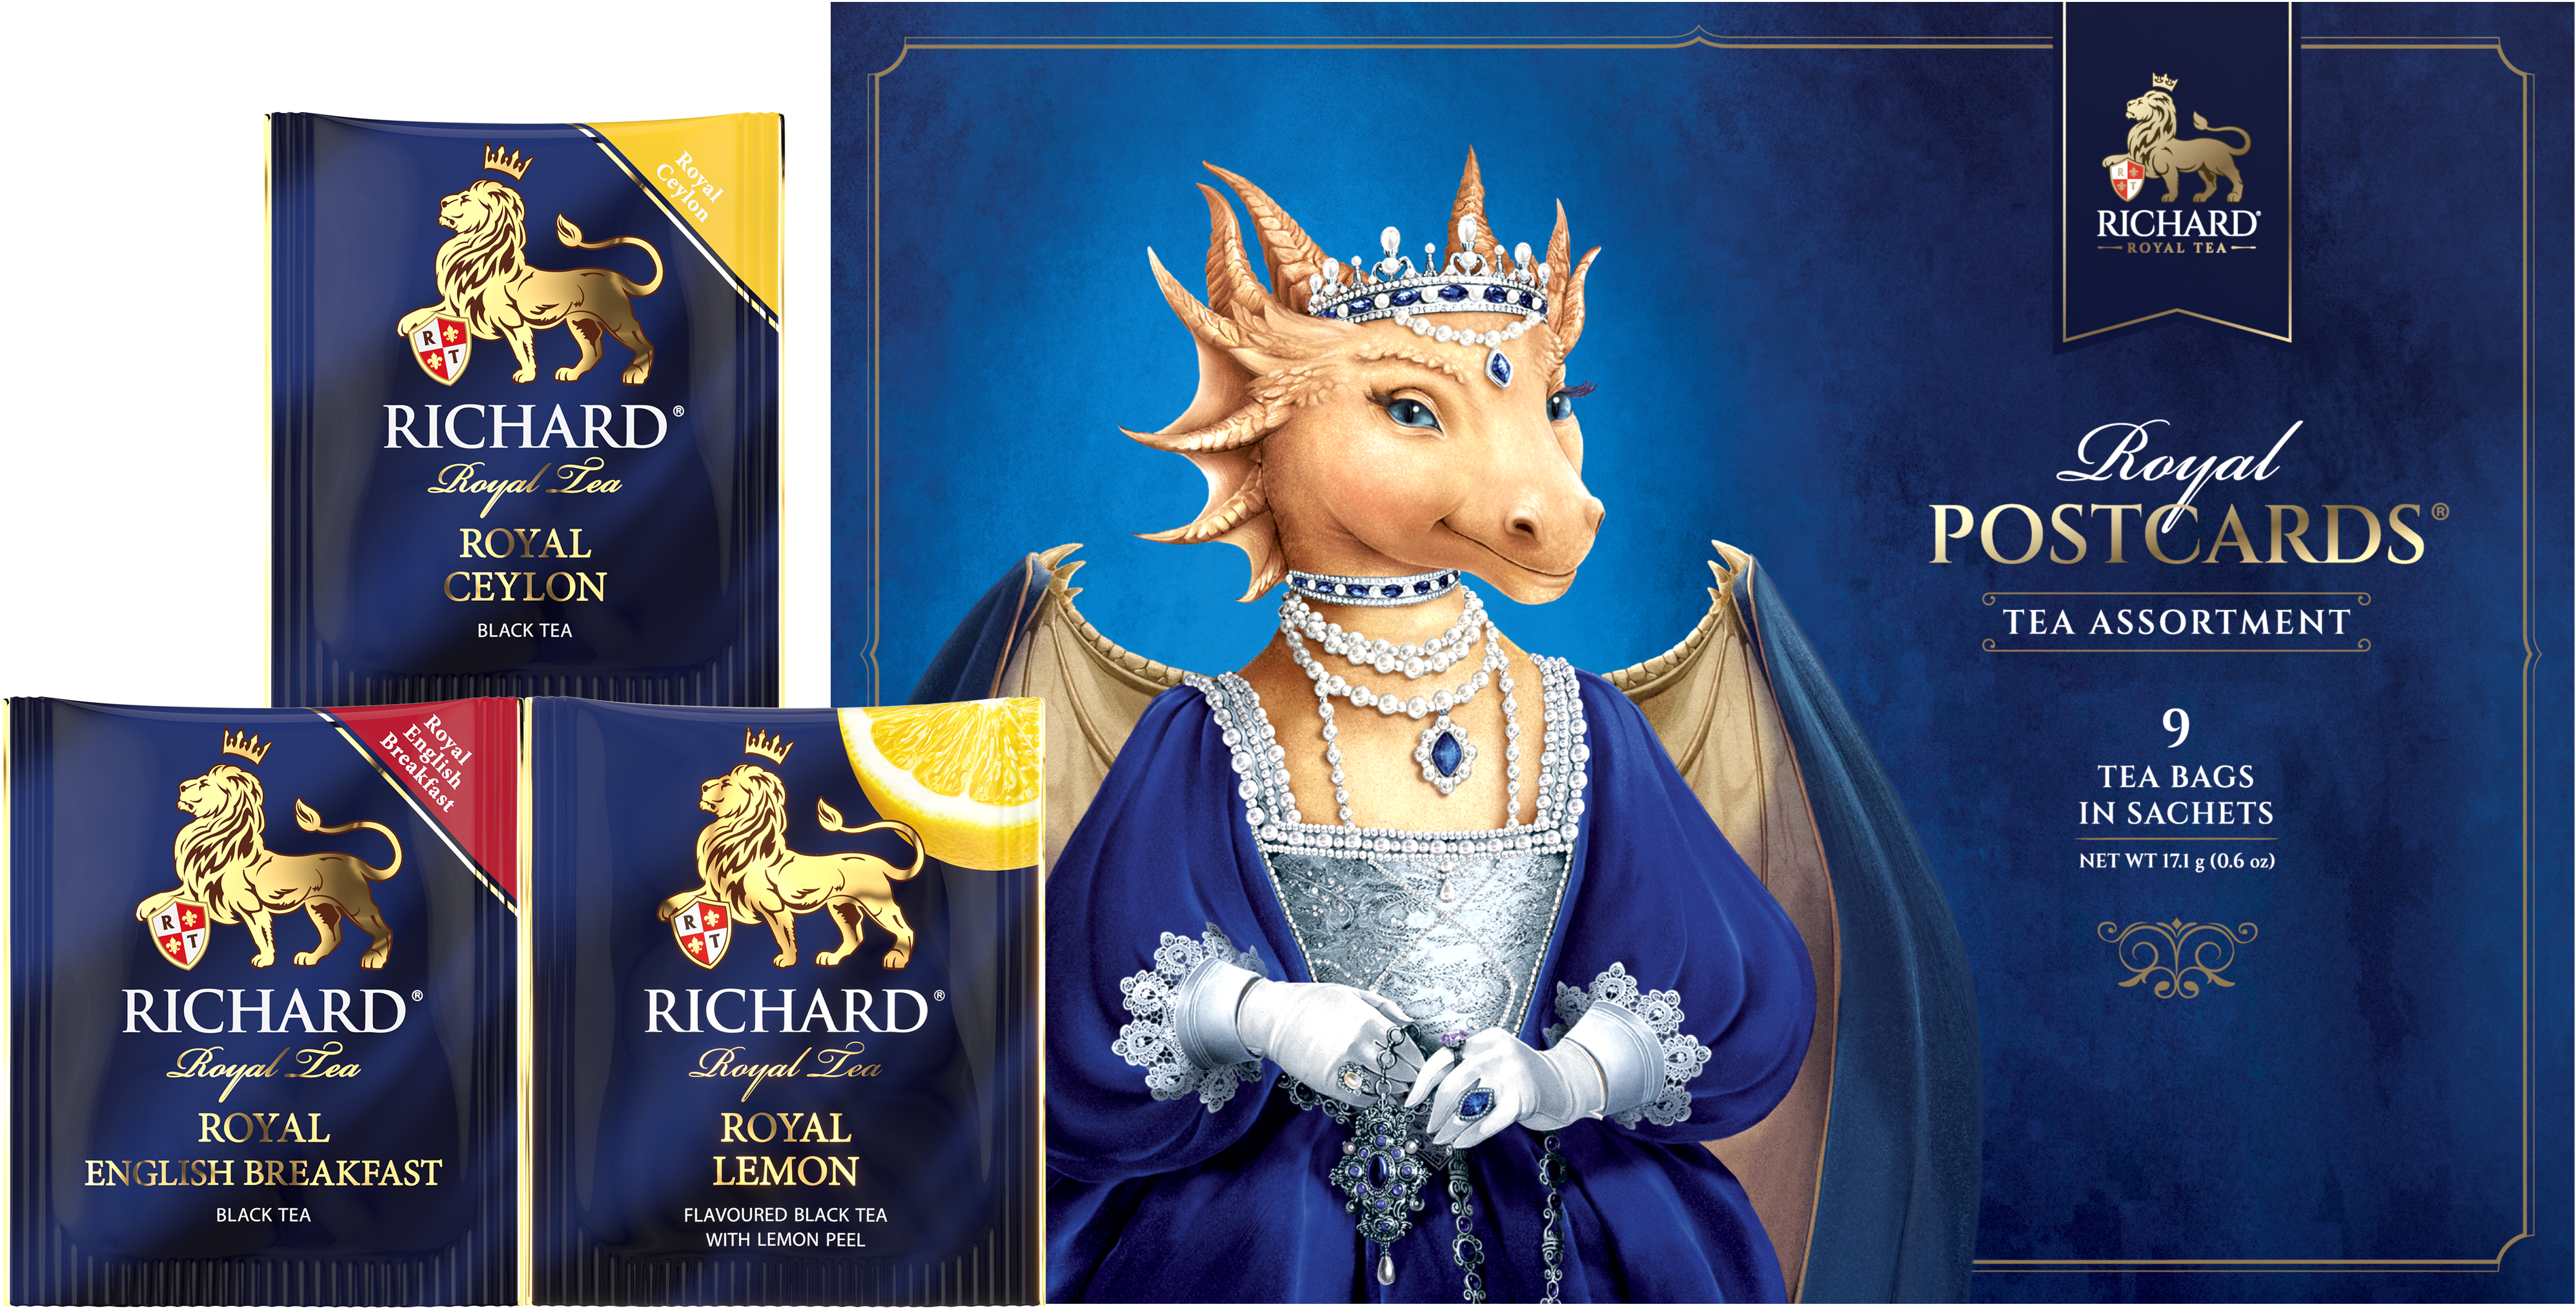 Richard Royal Királyi Képeslap, Sárkány Királynő, filteres fekete tea-válogatás, 17,1g